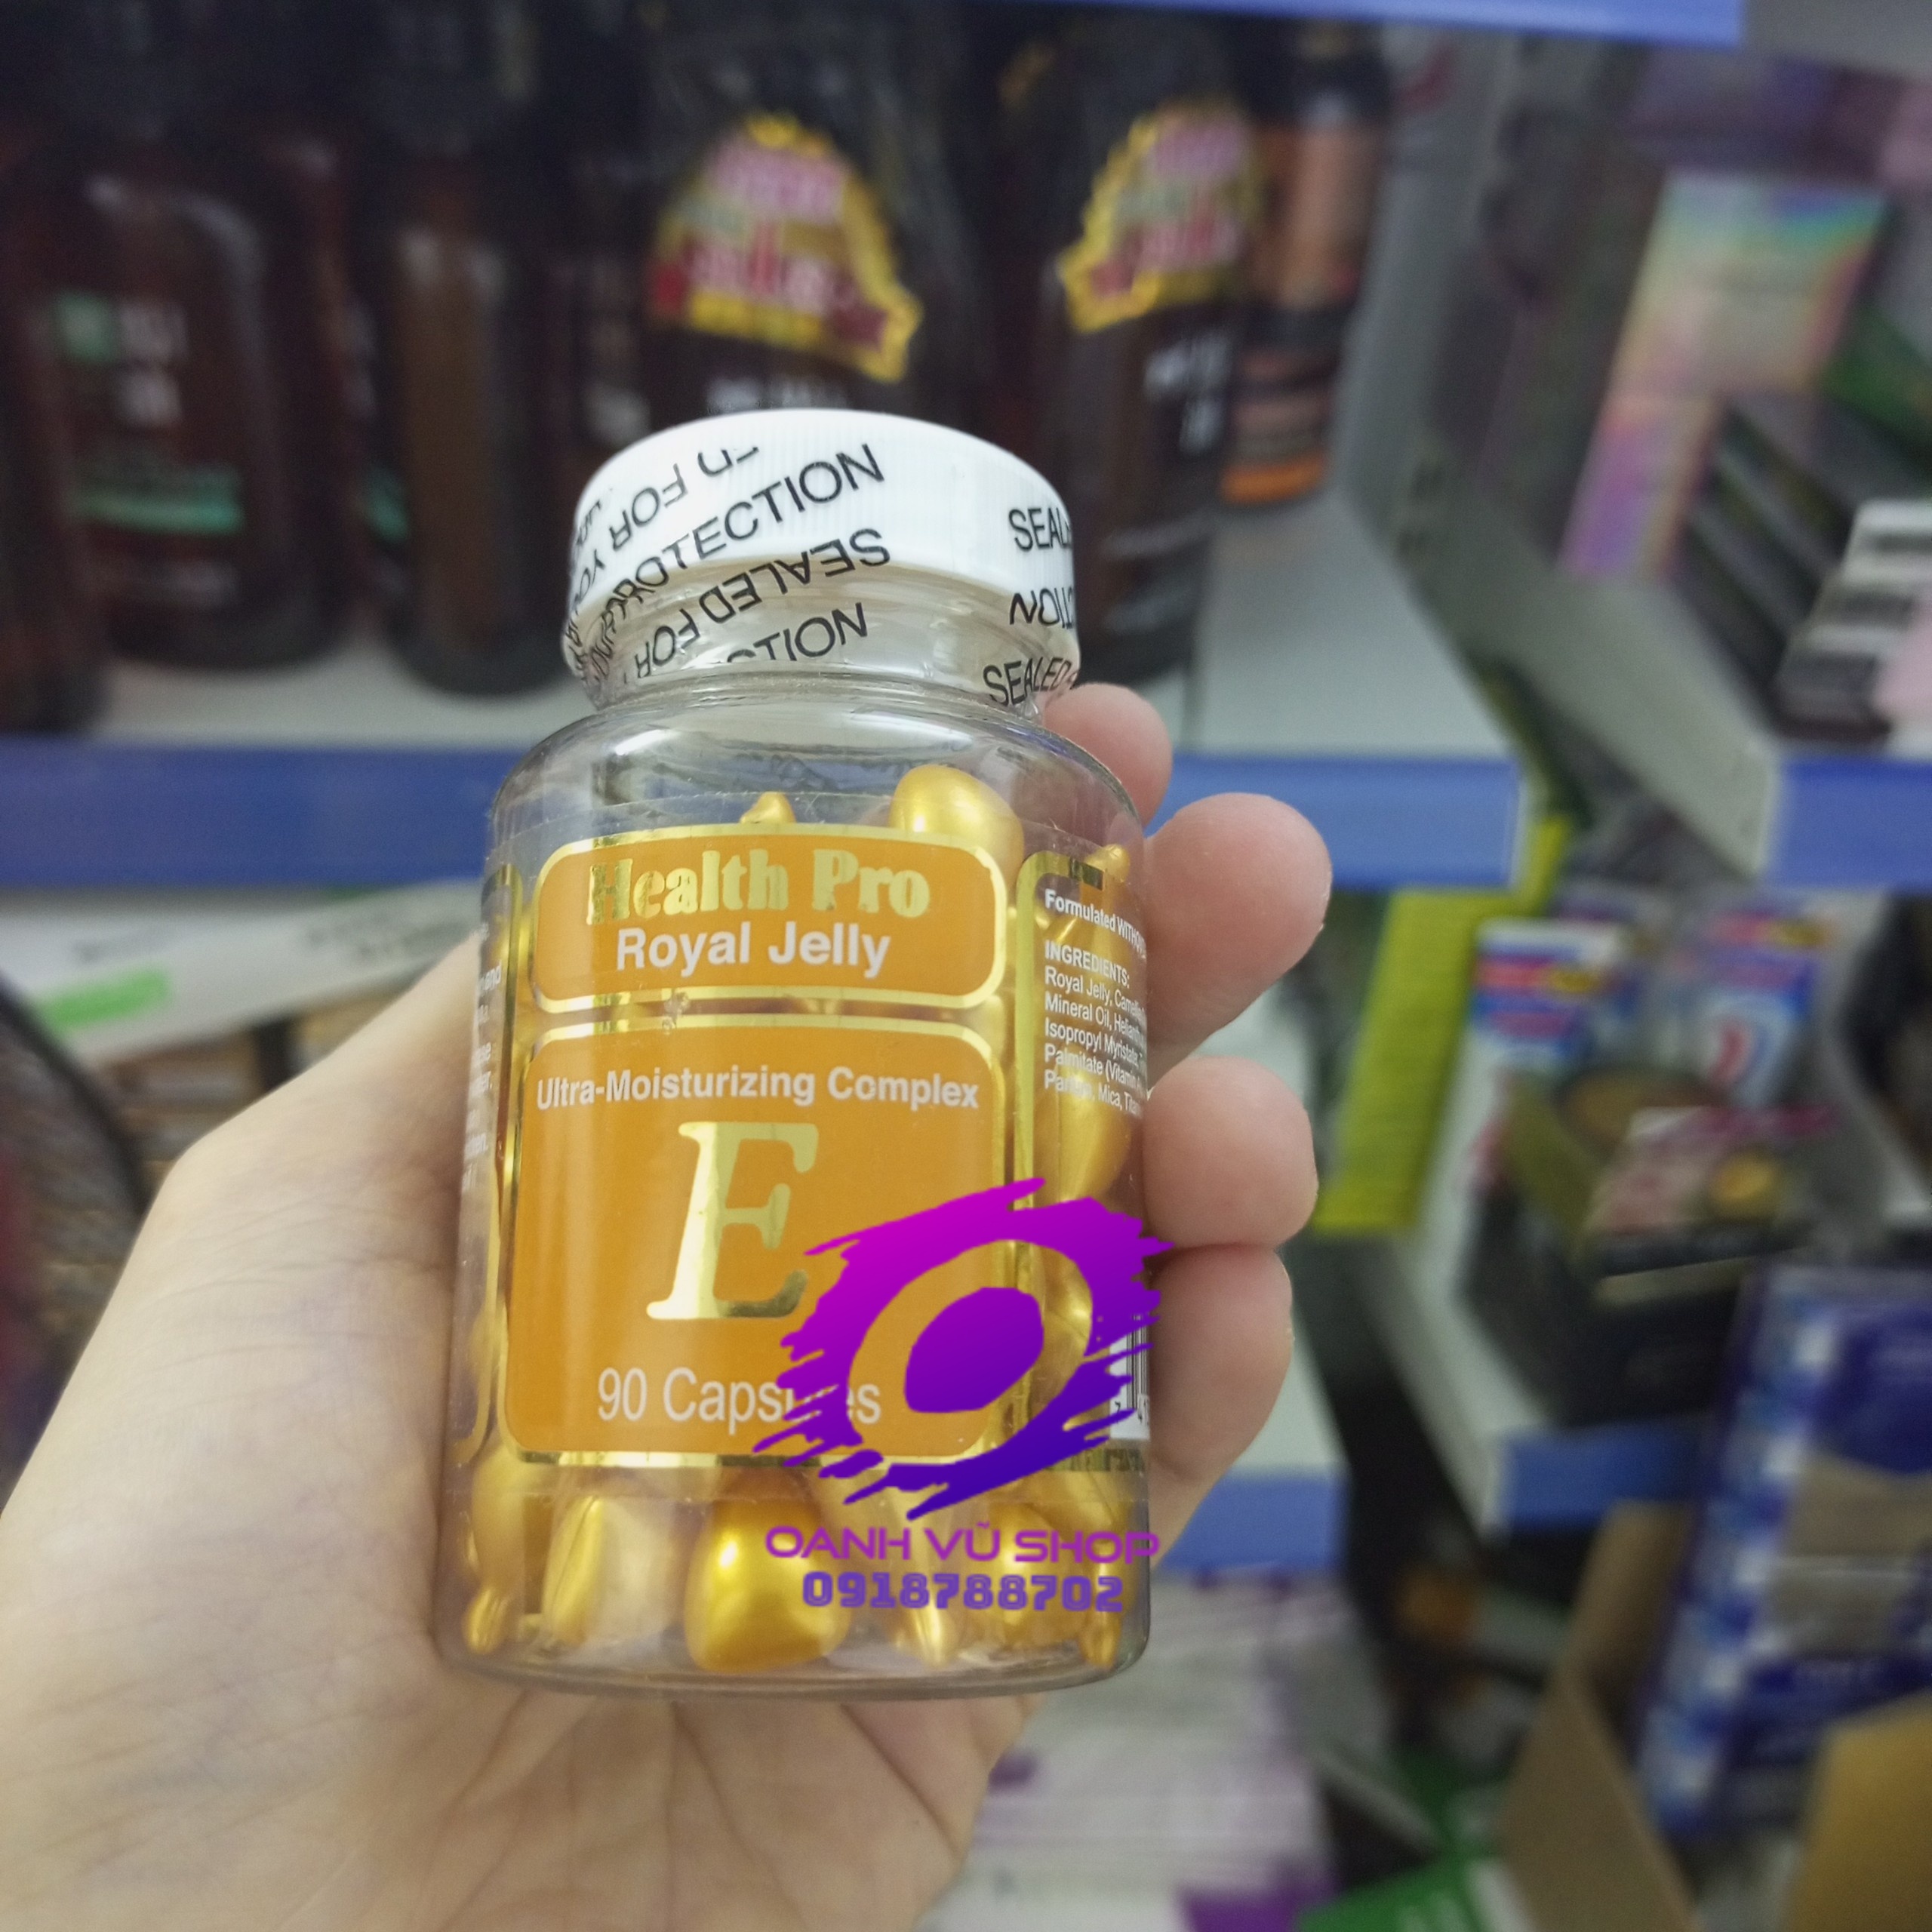 Viên nang dưỡng da sữa ong chúa vitamin E Health Pro Royal Jelly thoa mặt của Mỹ USA